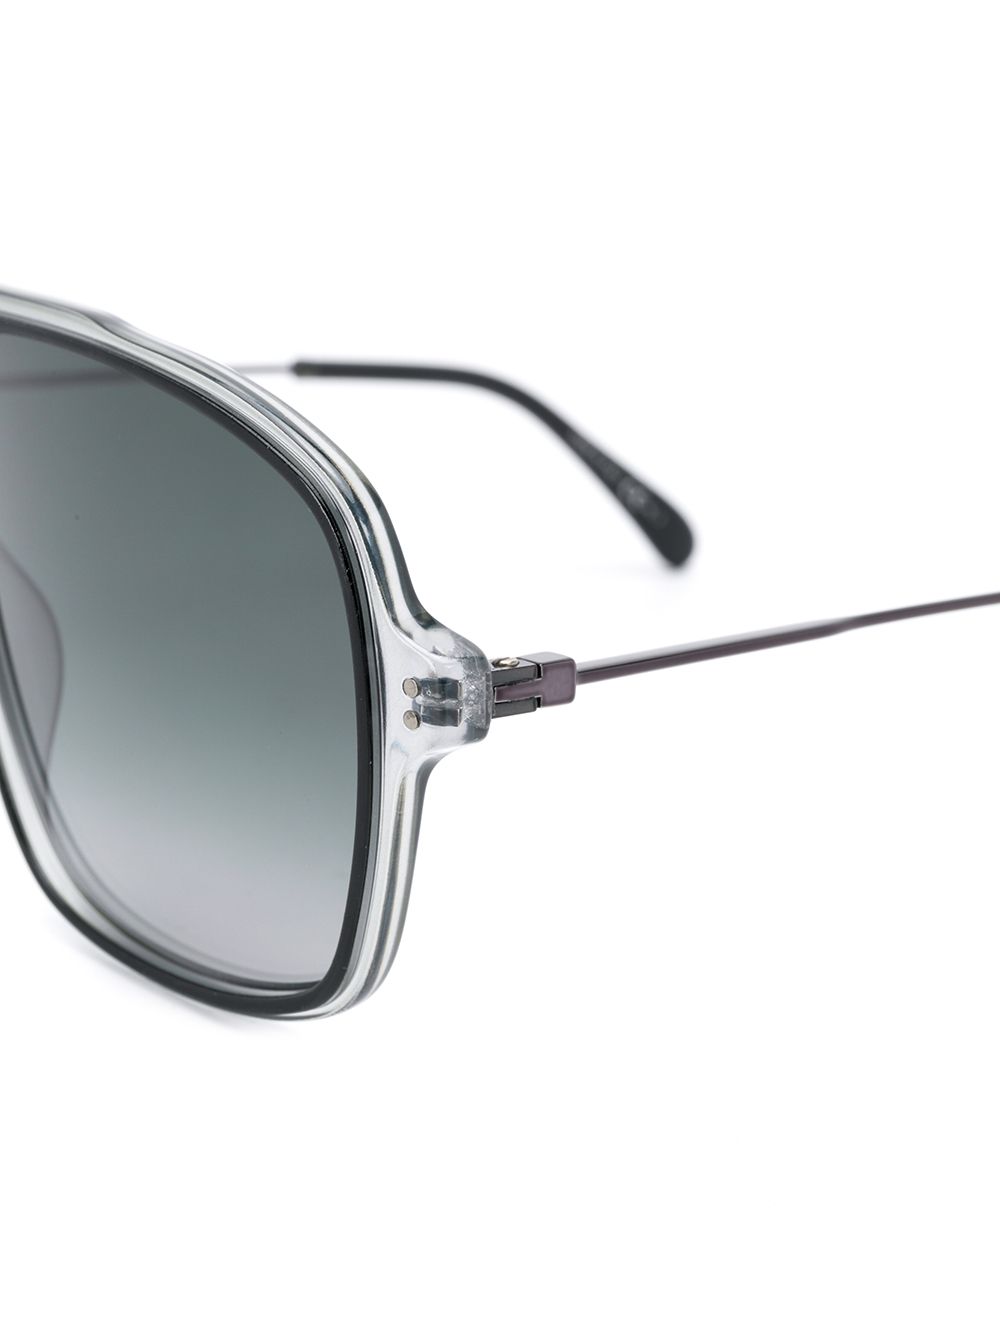 фото Givenchy eyewear солнцезащитные очки gv7138/s в прозрачной оправе